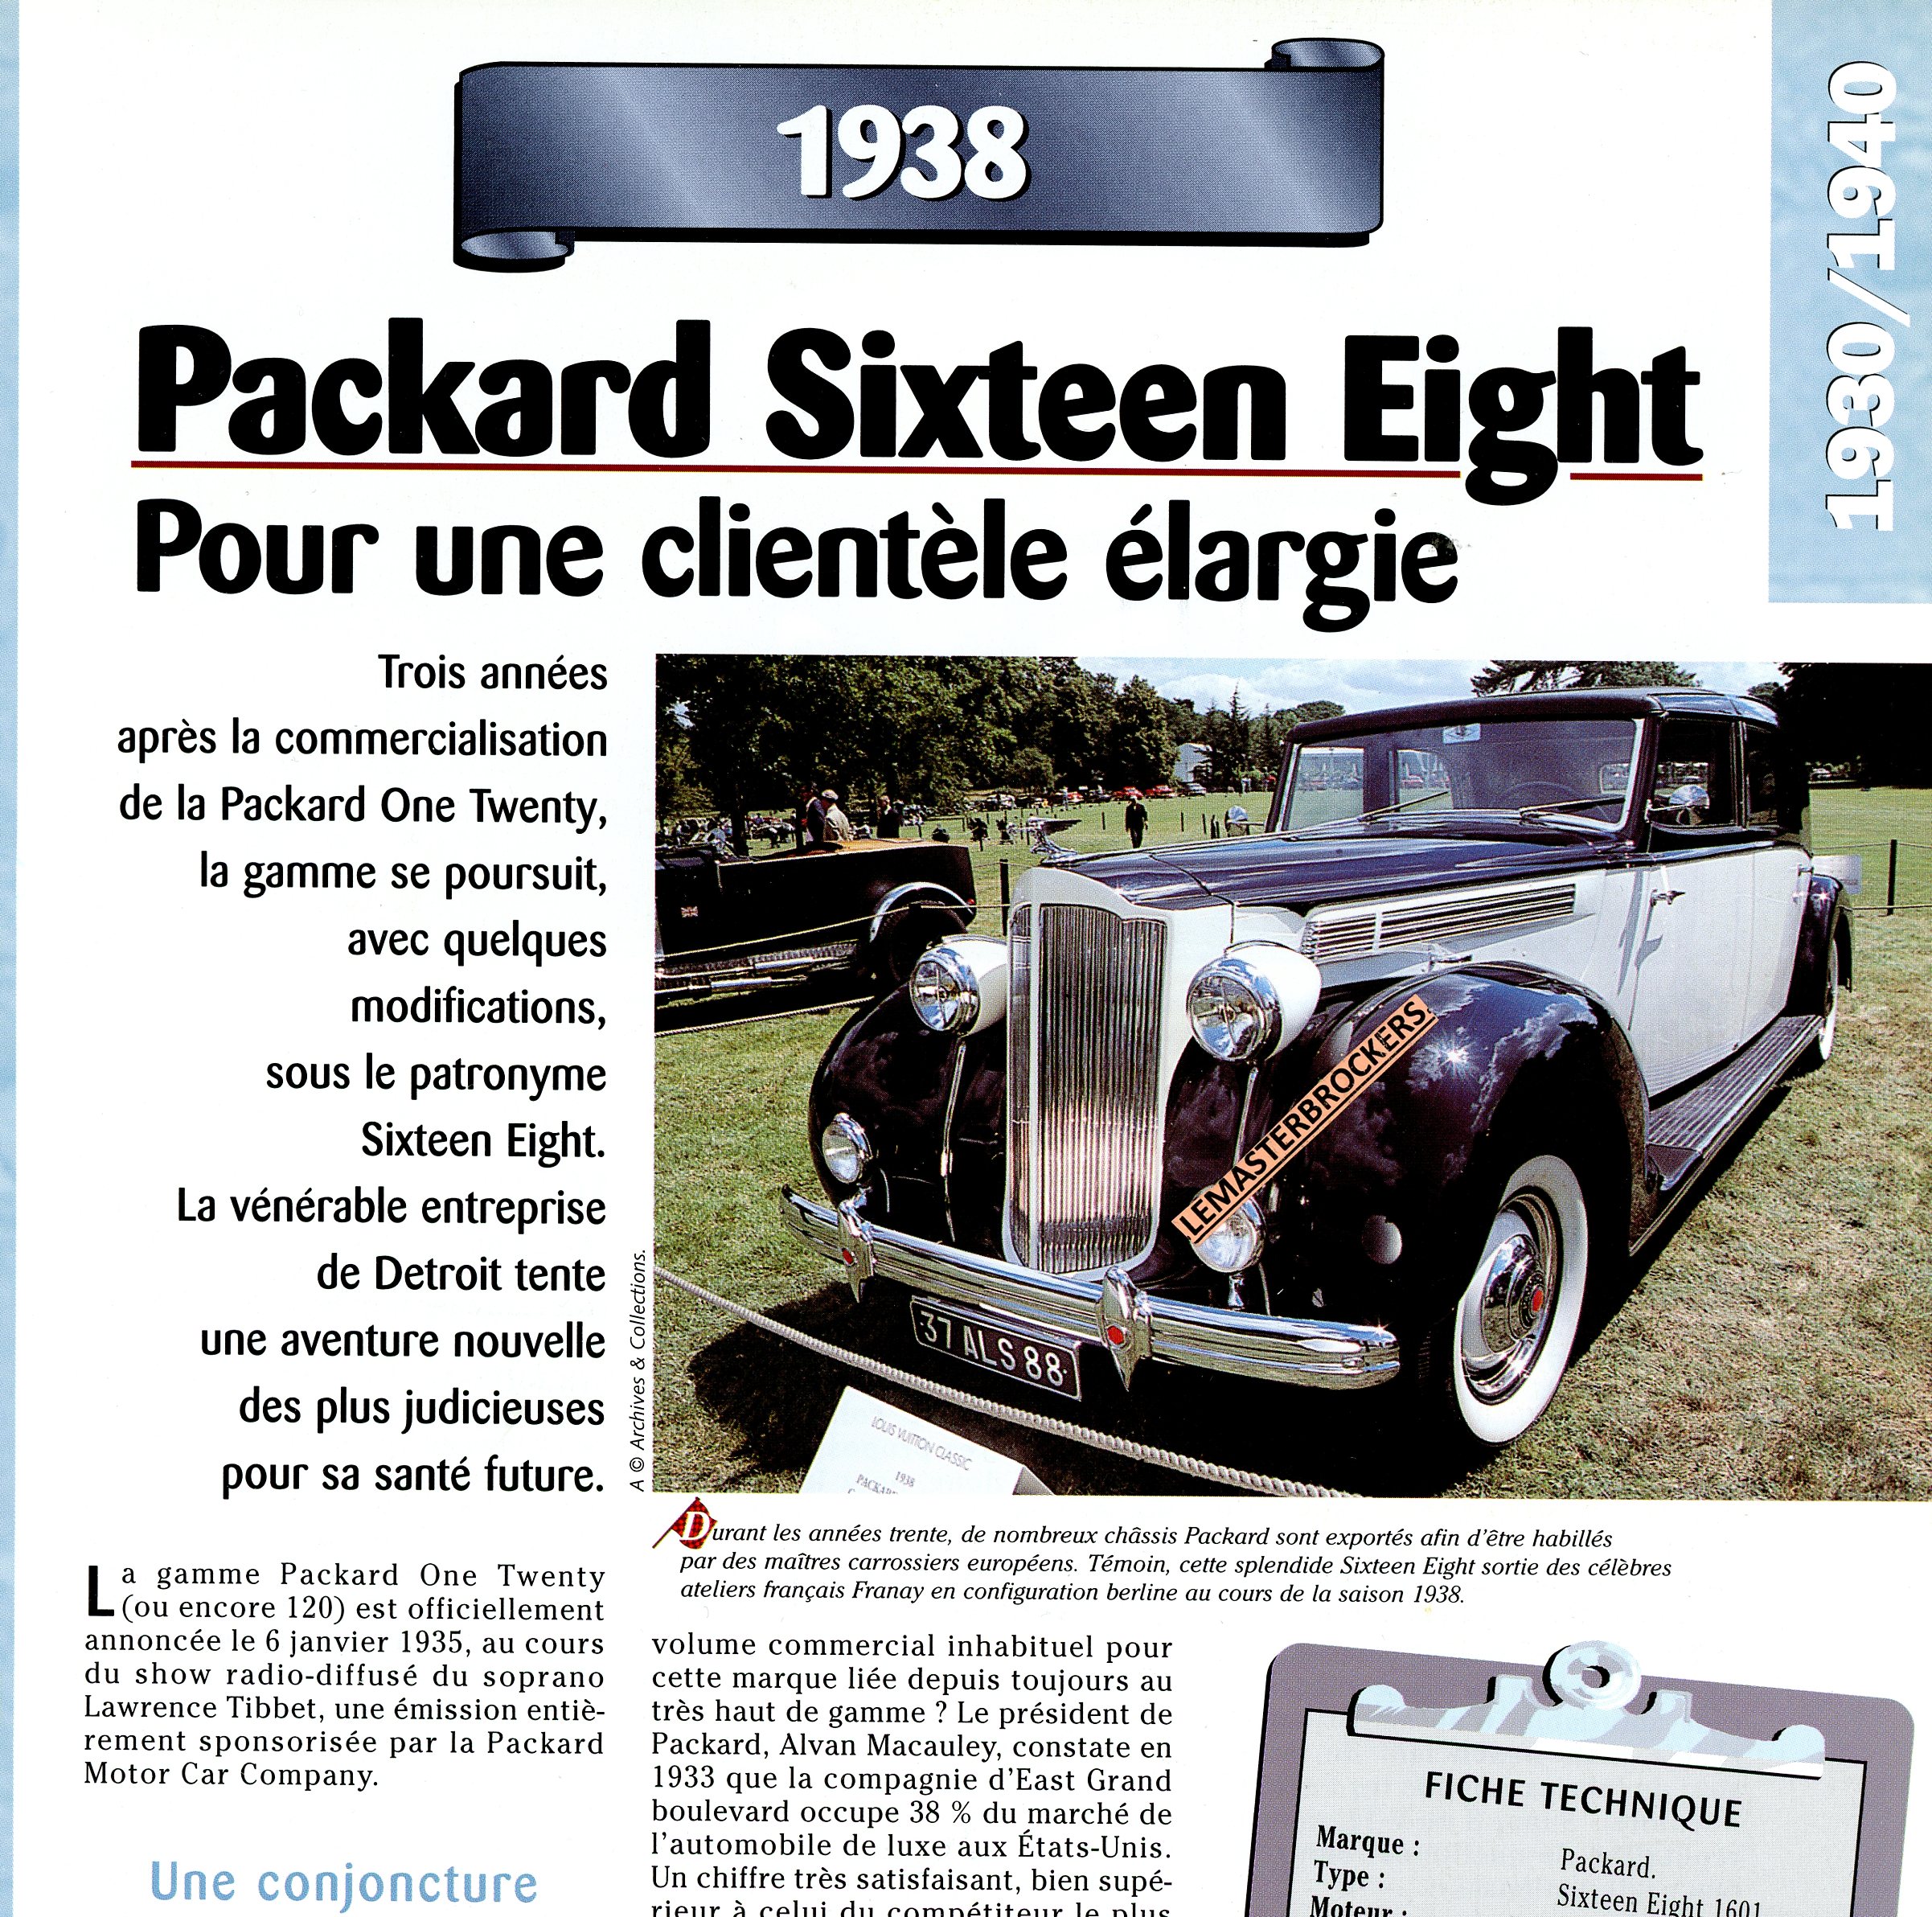 FICHE-TECHNIQUE-PACKARD-SIXTEEN-EIGHT-1938-FICHE-AUTO-LEMASTERBROCKERS